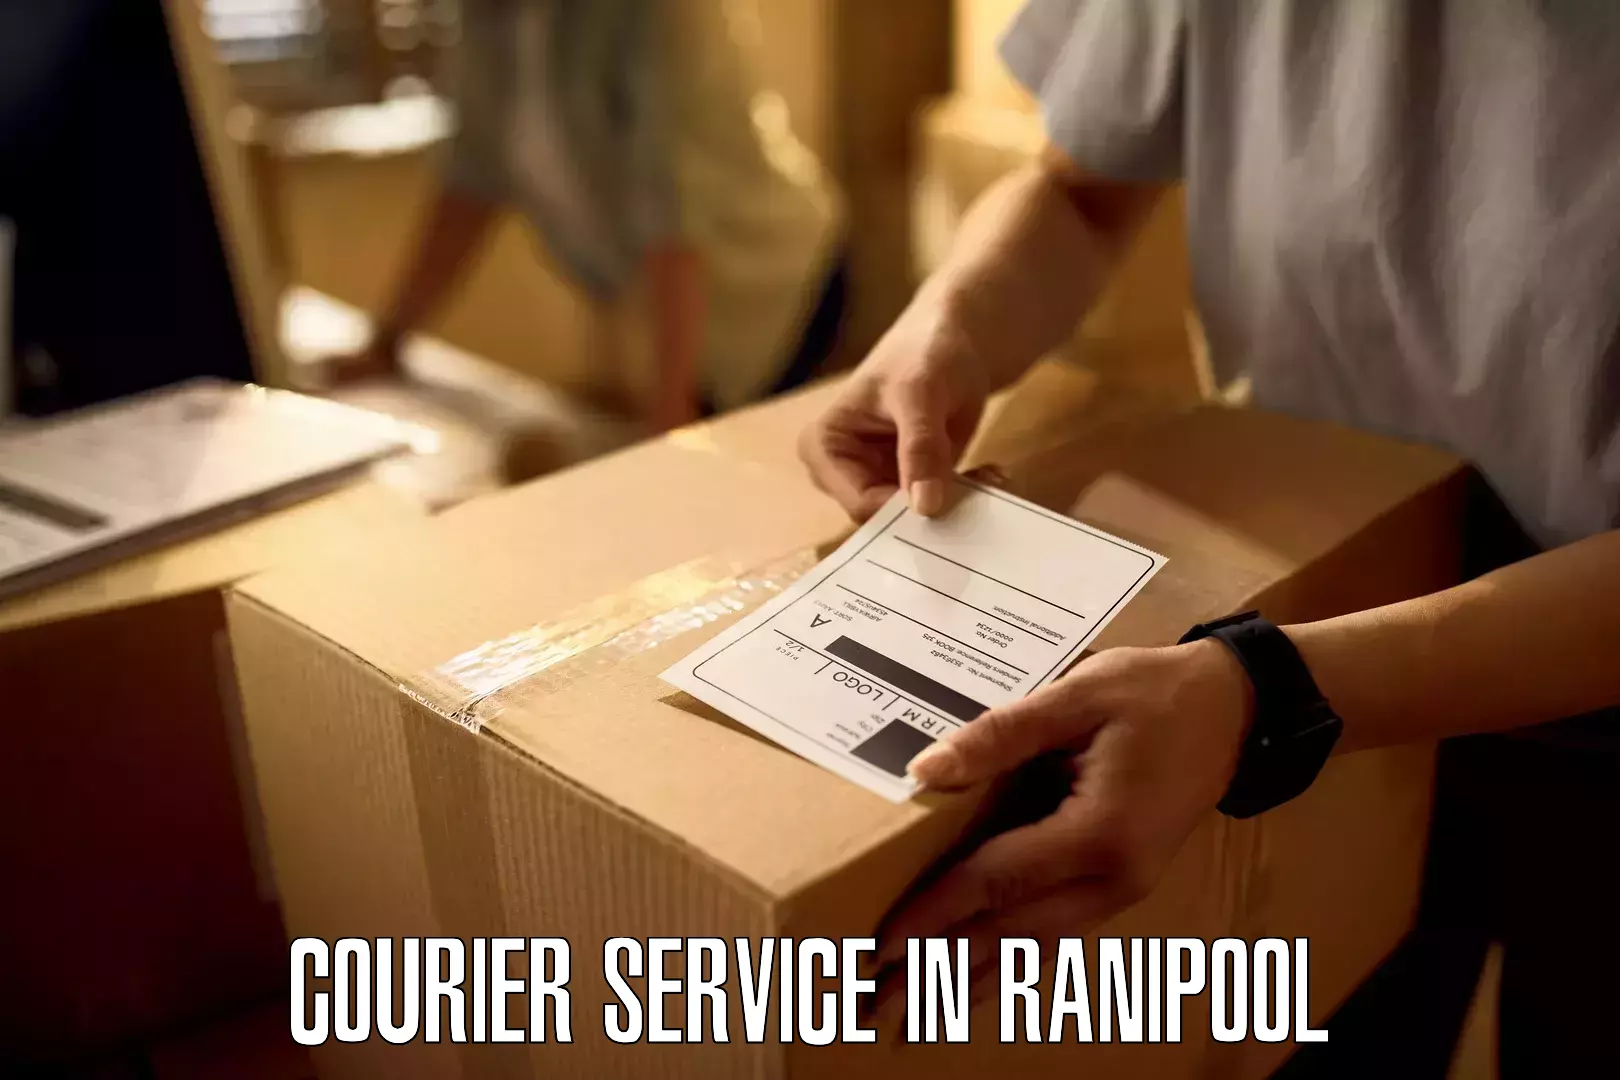 Express logistics in Ranipool